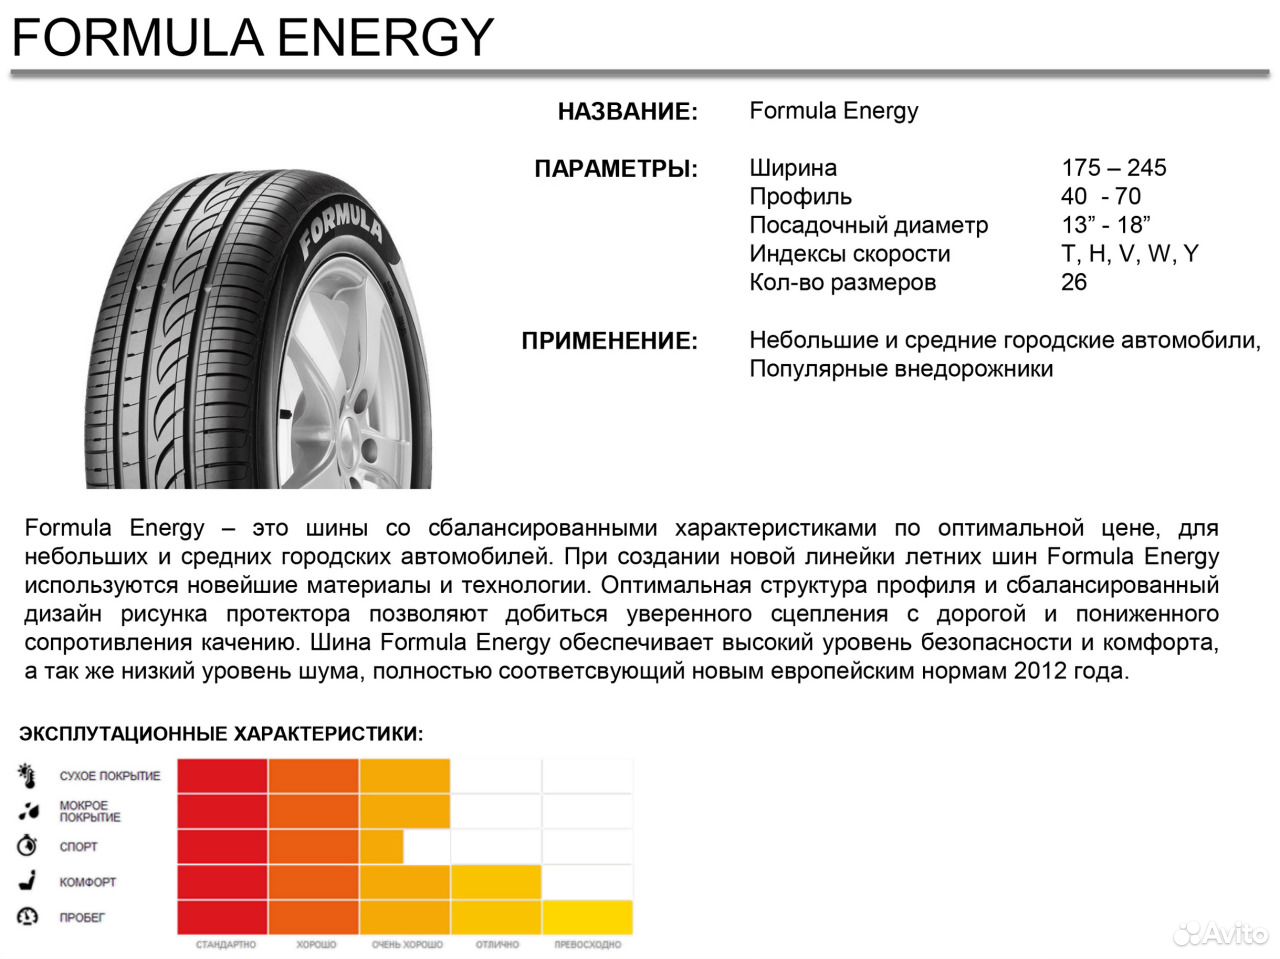 Формула шин 55. Шина Formula 185/65 r15. Шина 195/65r15 Pirelli Formula Energy 91v. 185/65r15 92h XL Pirelli Formula Energy. Шины формула Энерджи 185/65 r15.